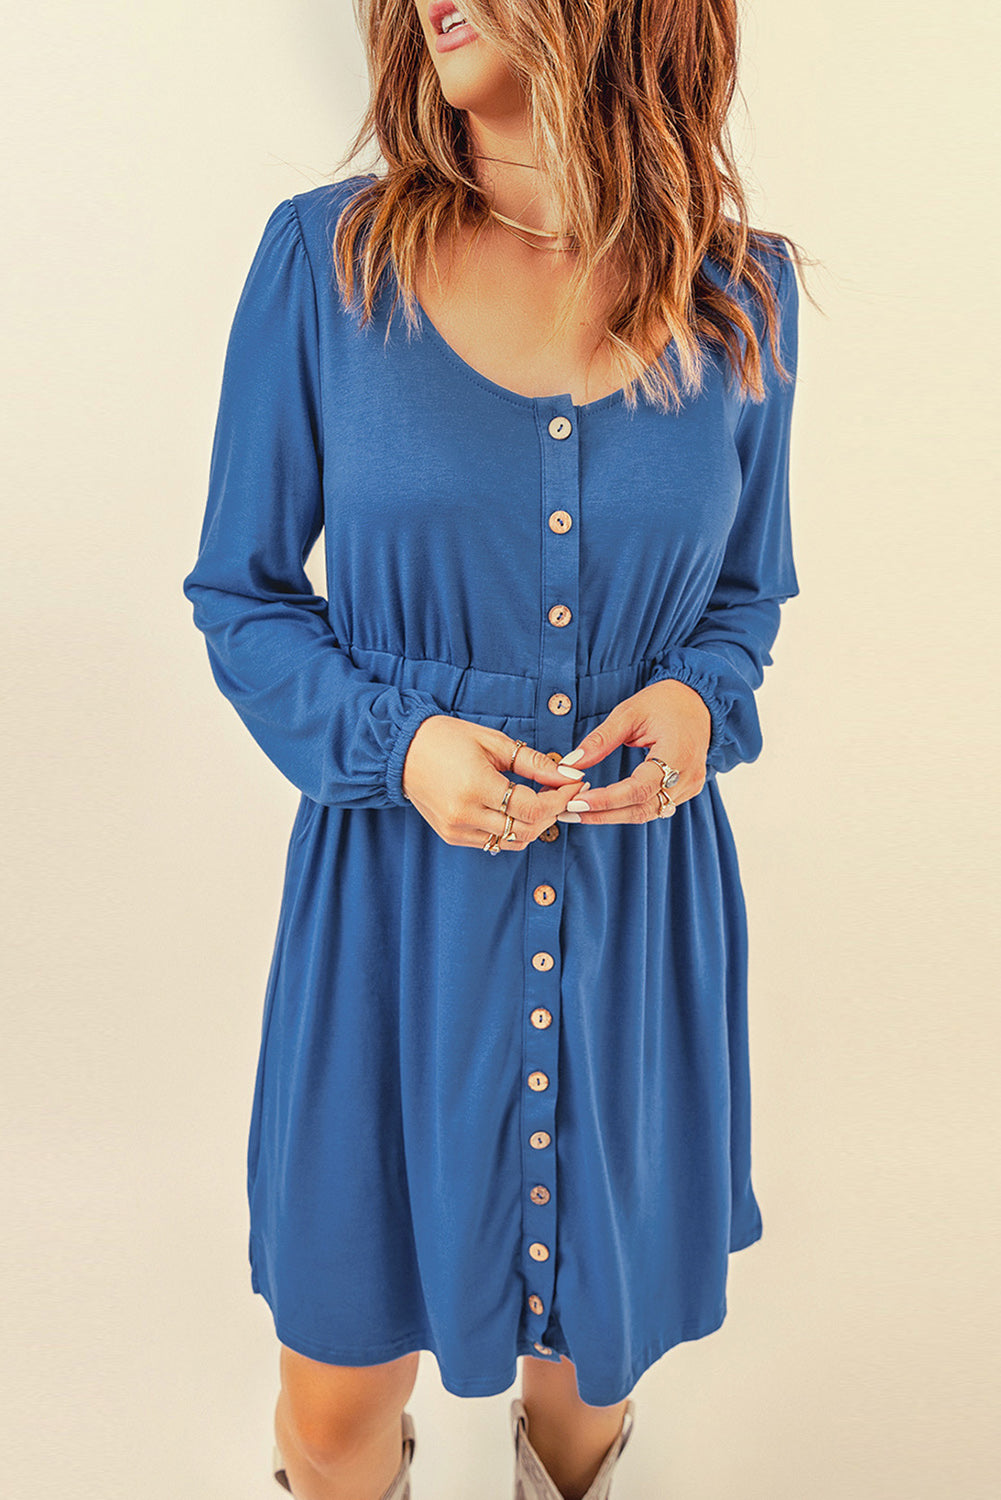 Blaues, langärmliges Kleid mit Knopfleiste und hoher Taille